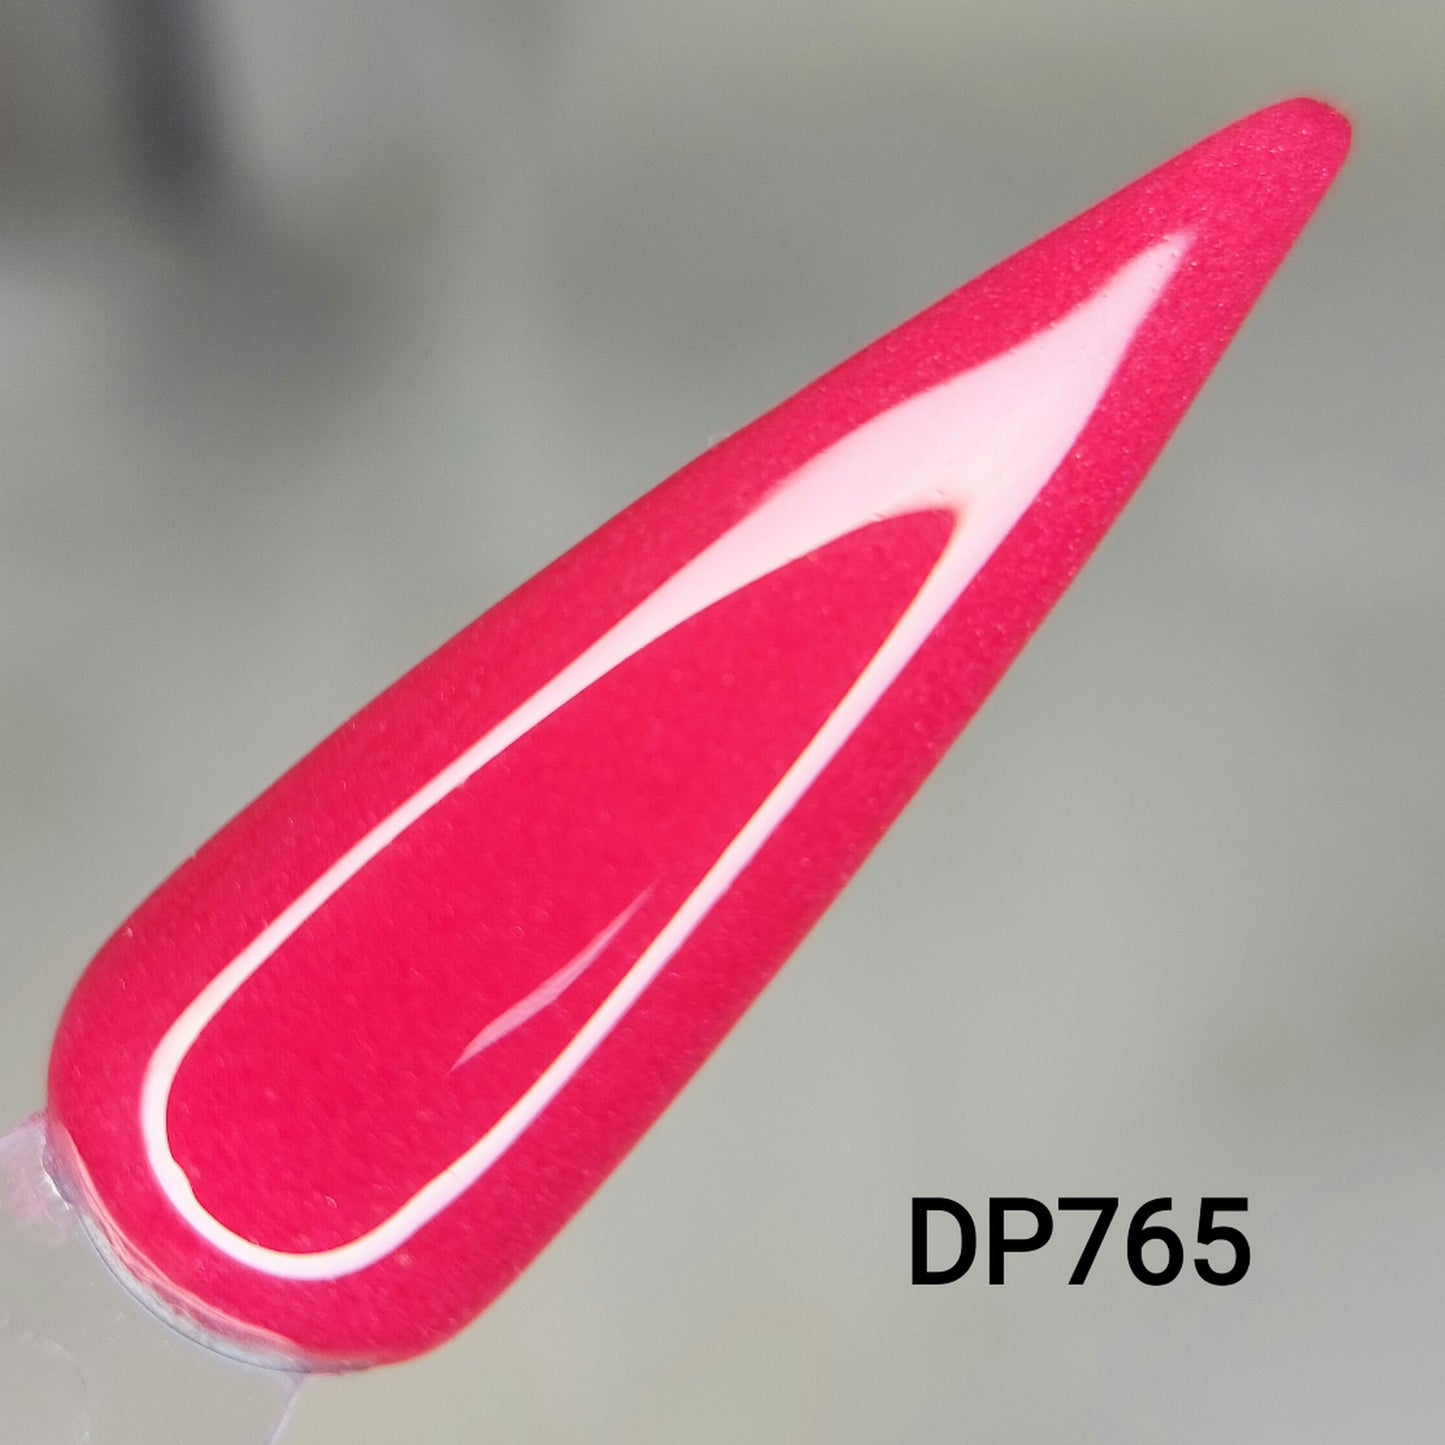 Pride Red: Life DP765